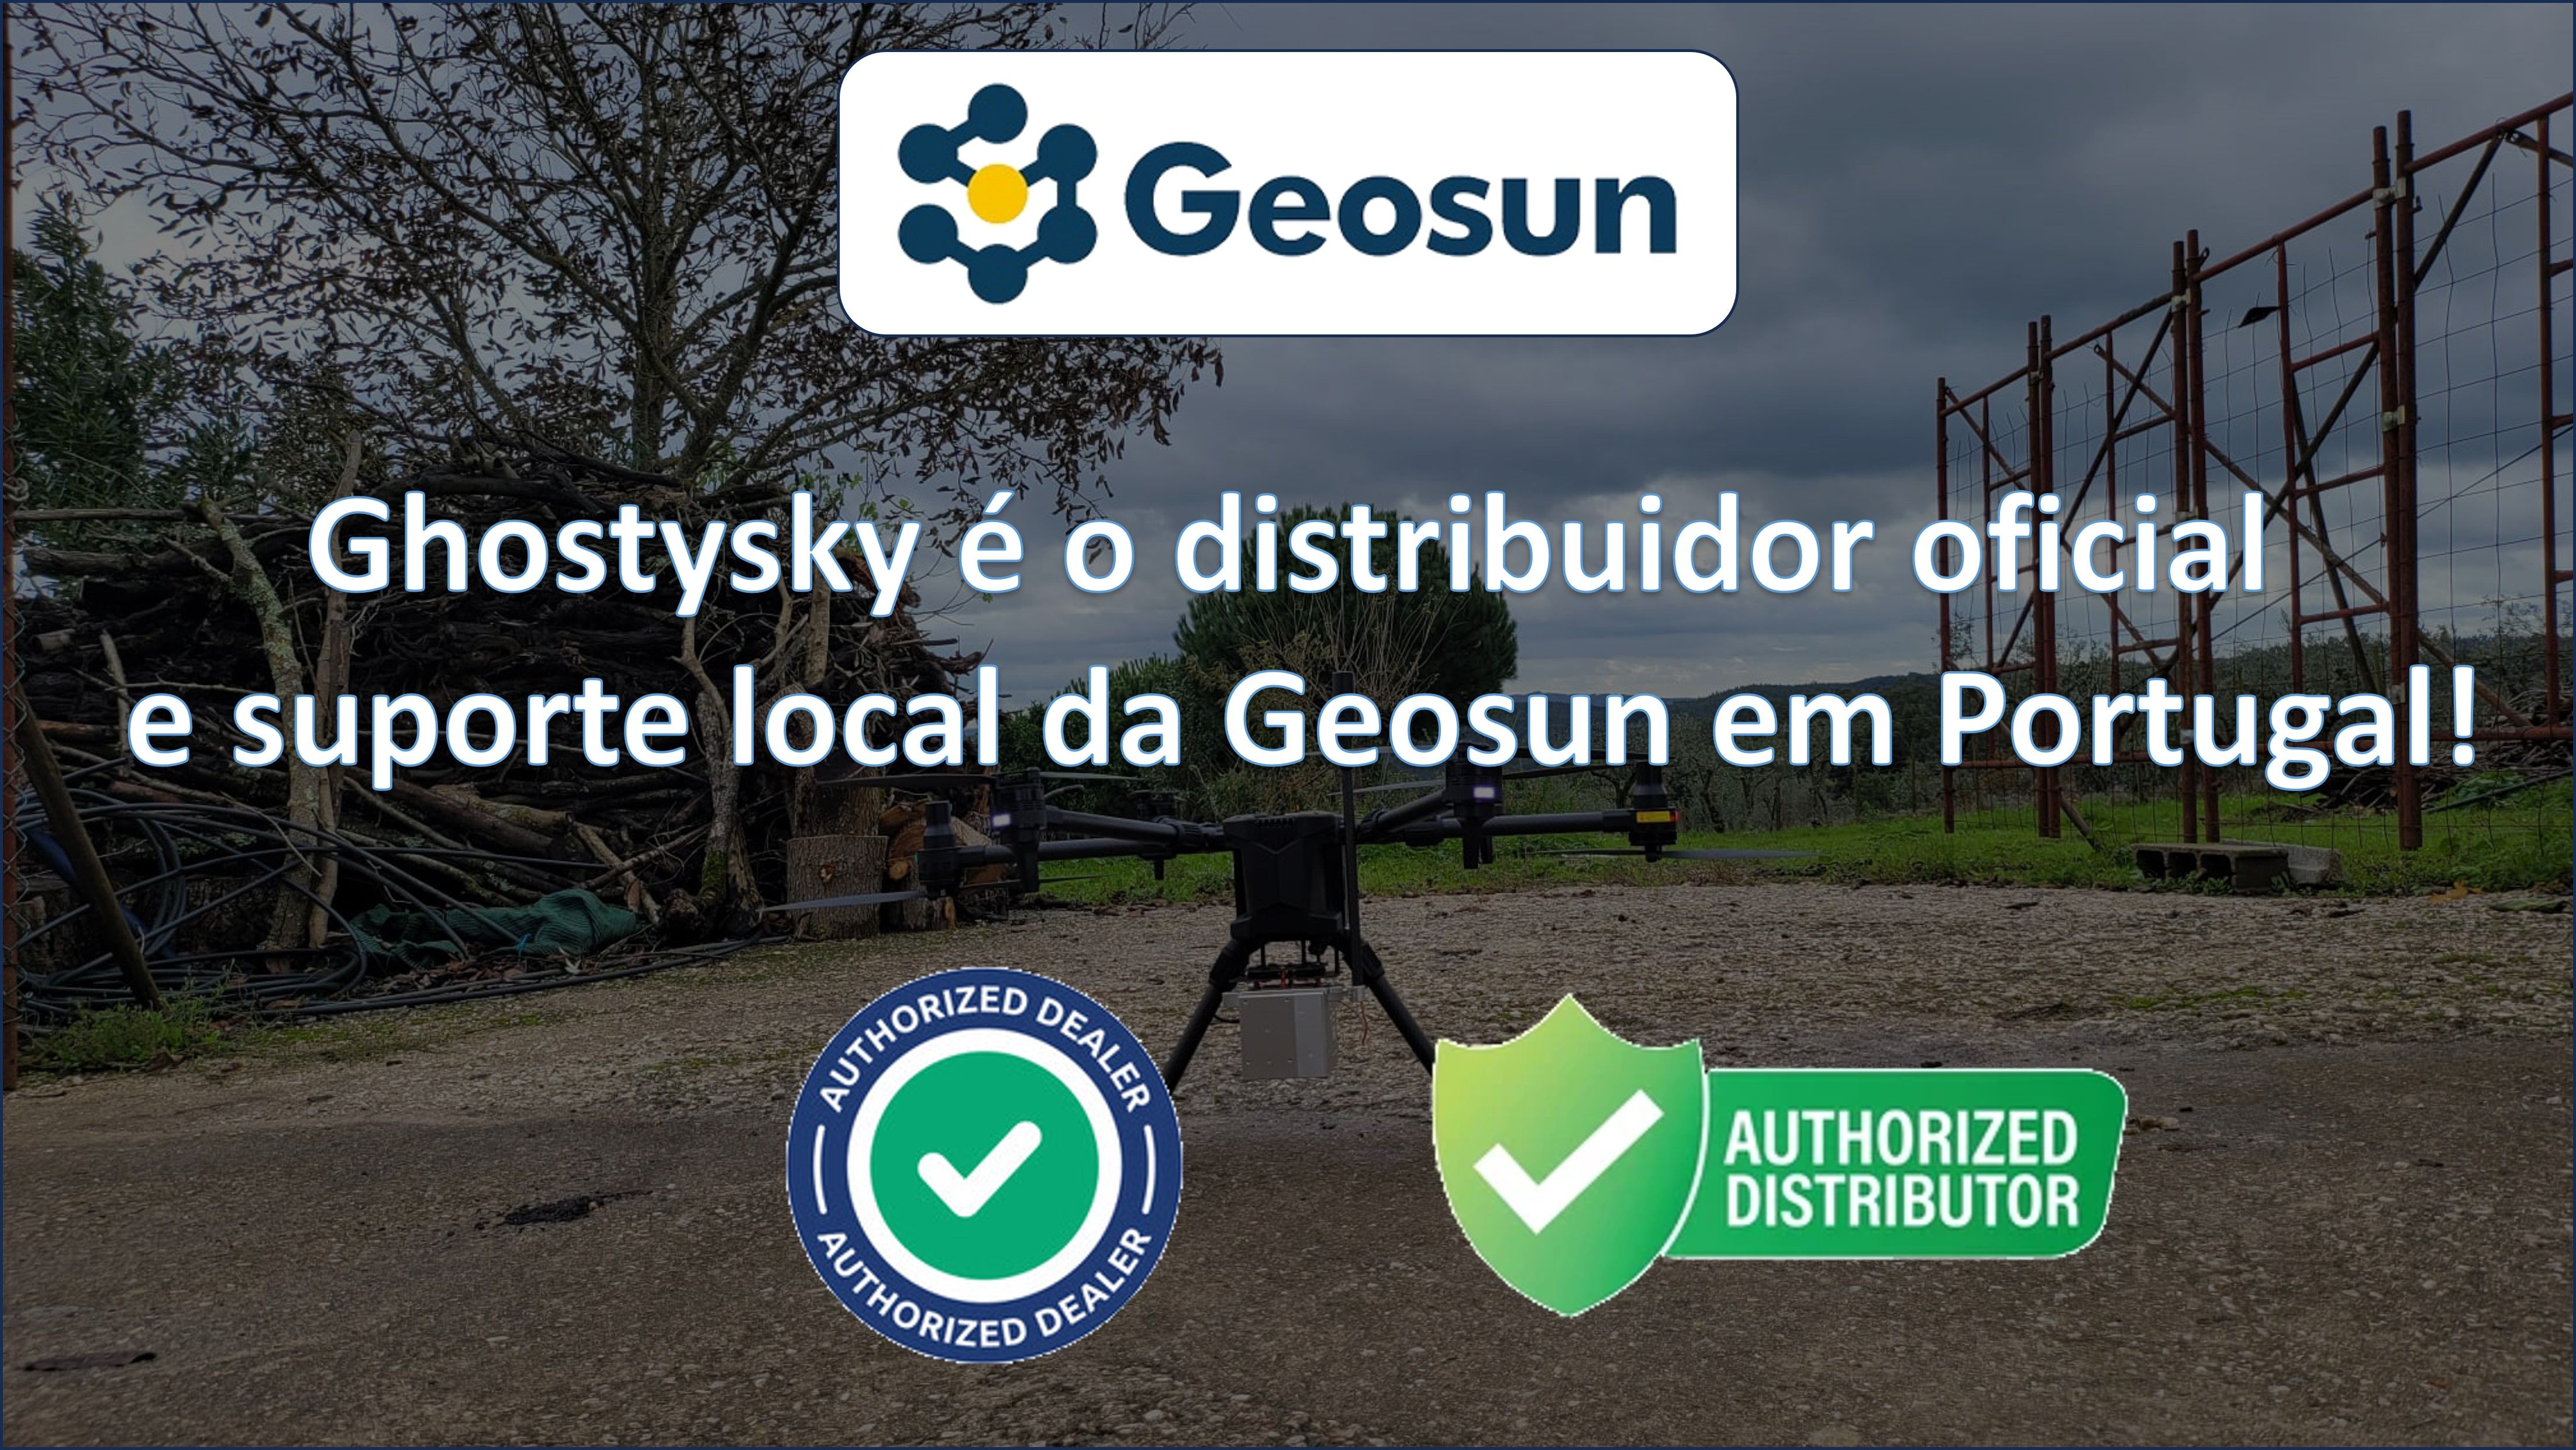 Ghostysky é o distruidor autorizado da Geosun em Portugal!